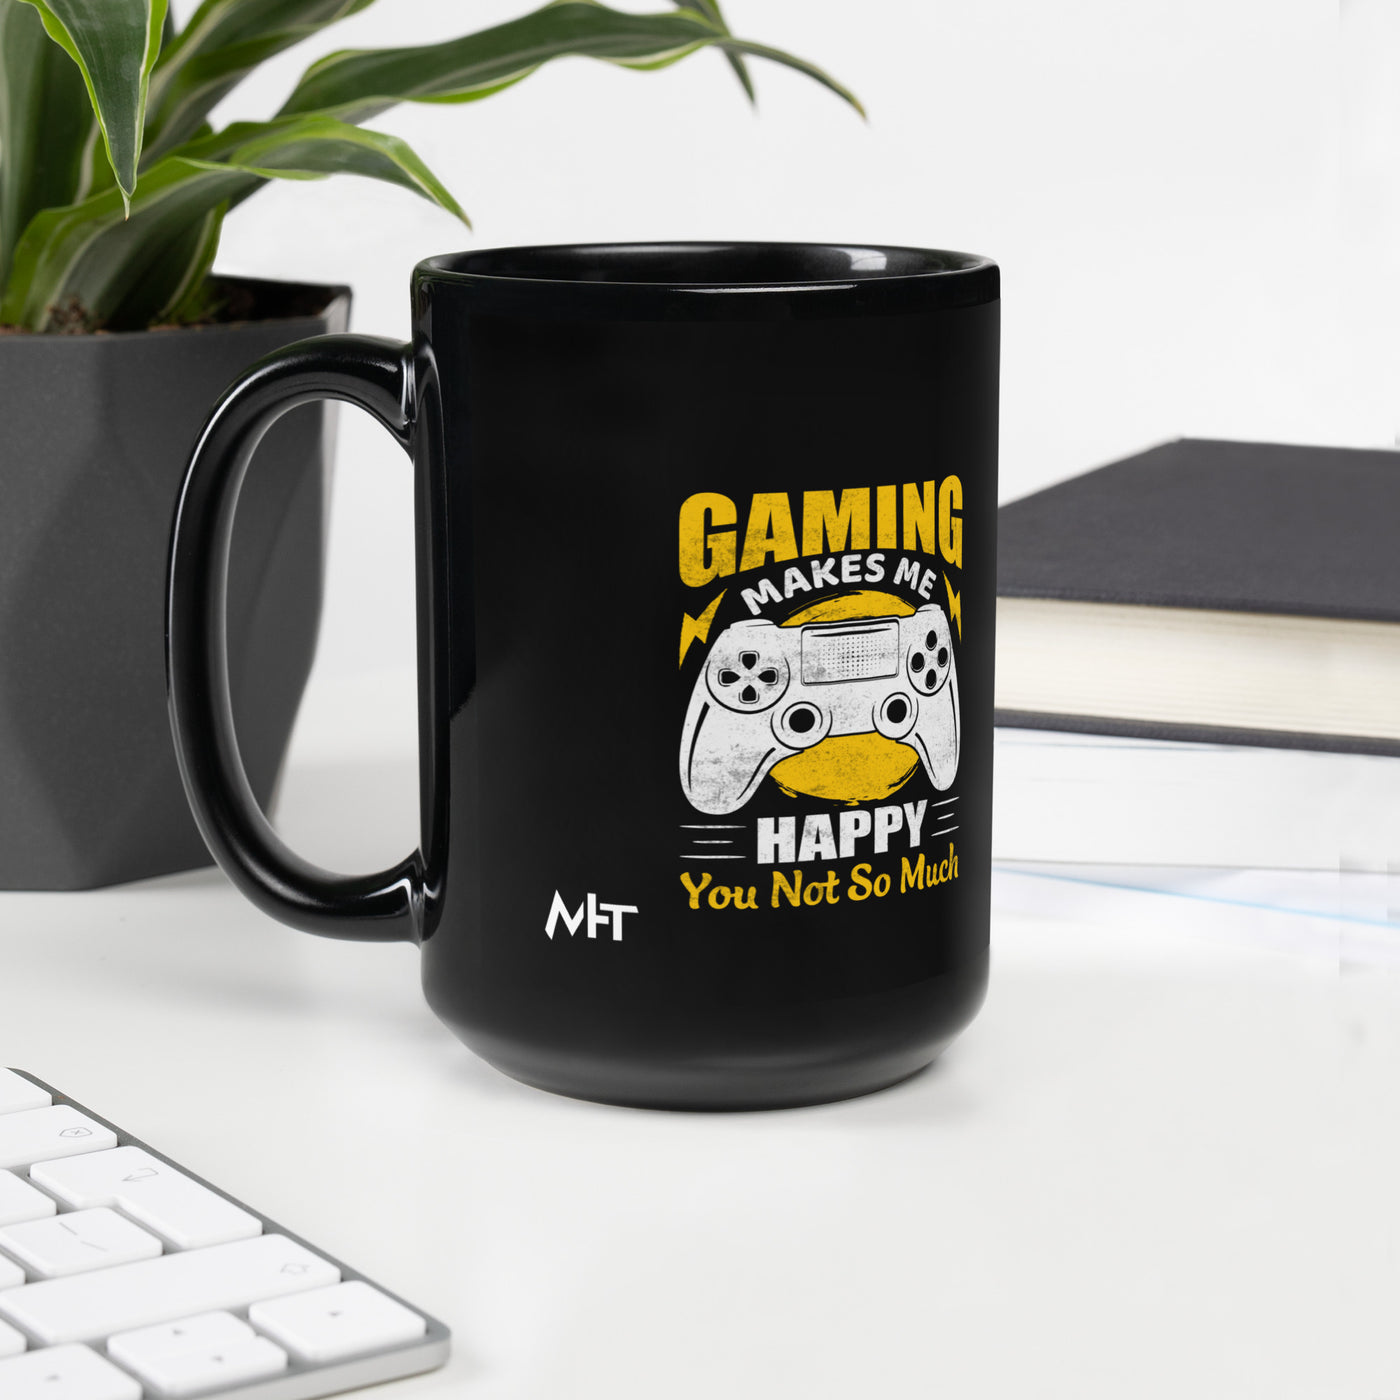 Gaming Makes me Happy (MAHFUZ) - Black Glossy Mug